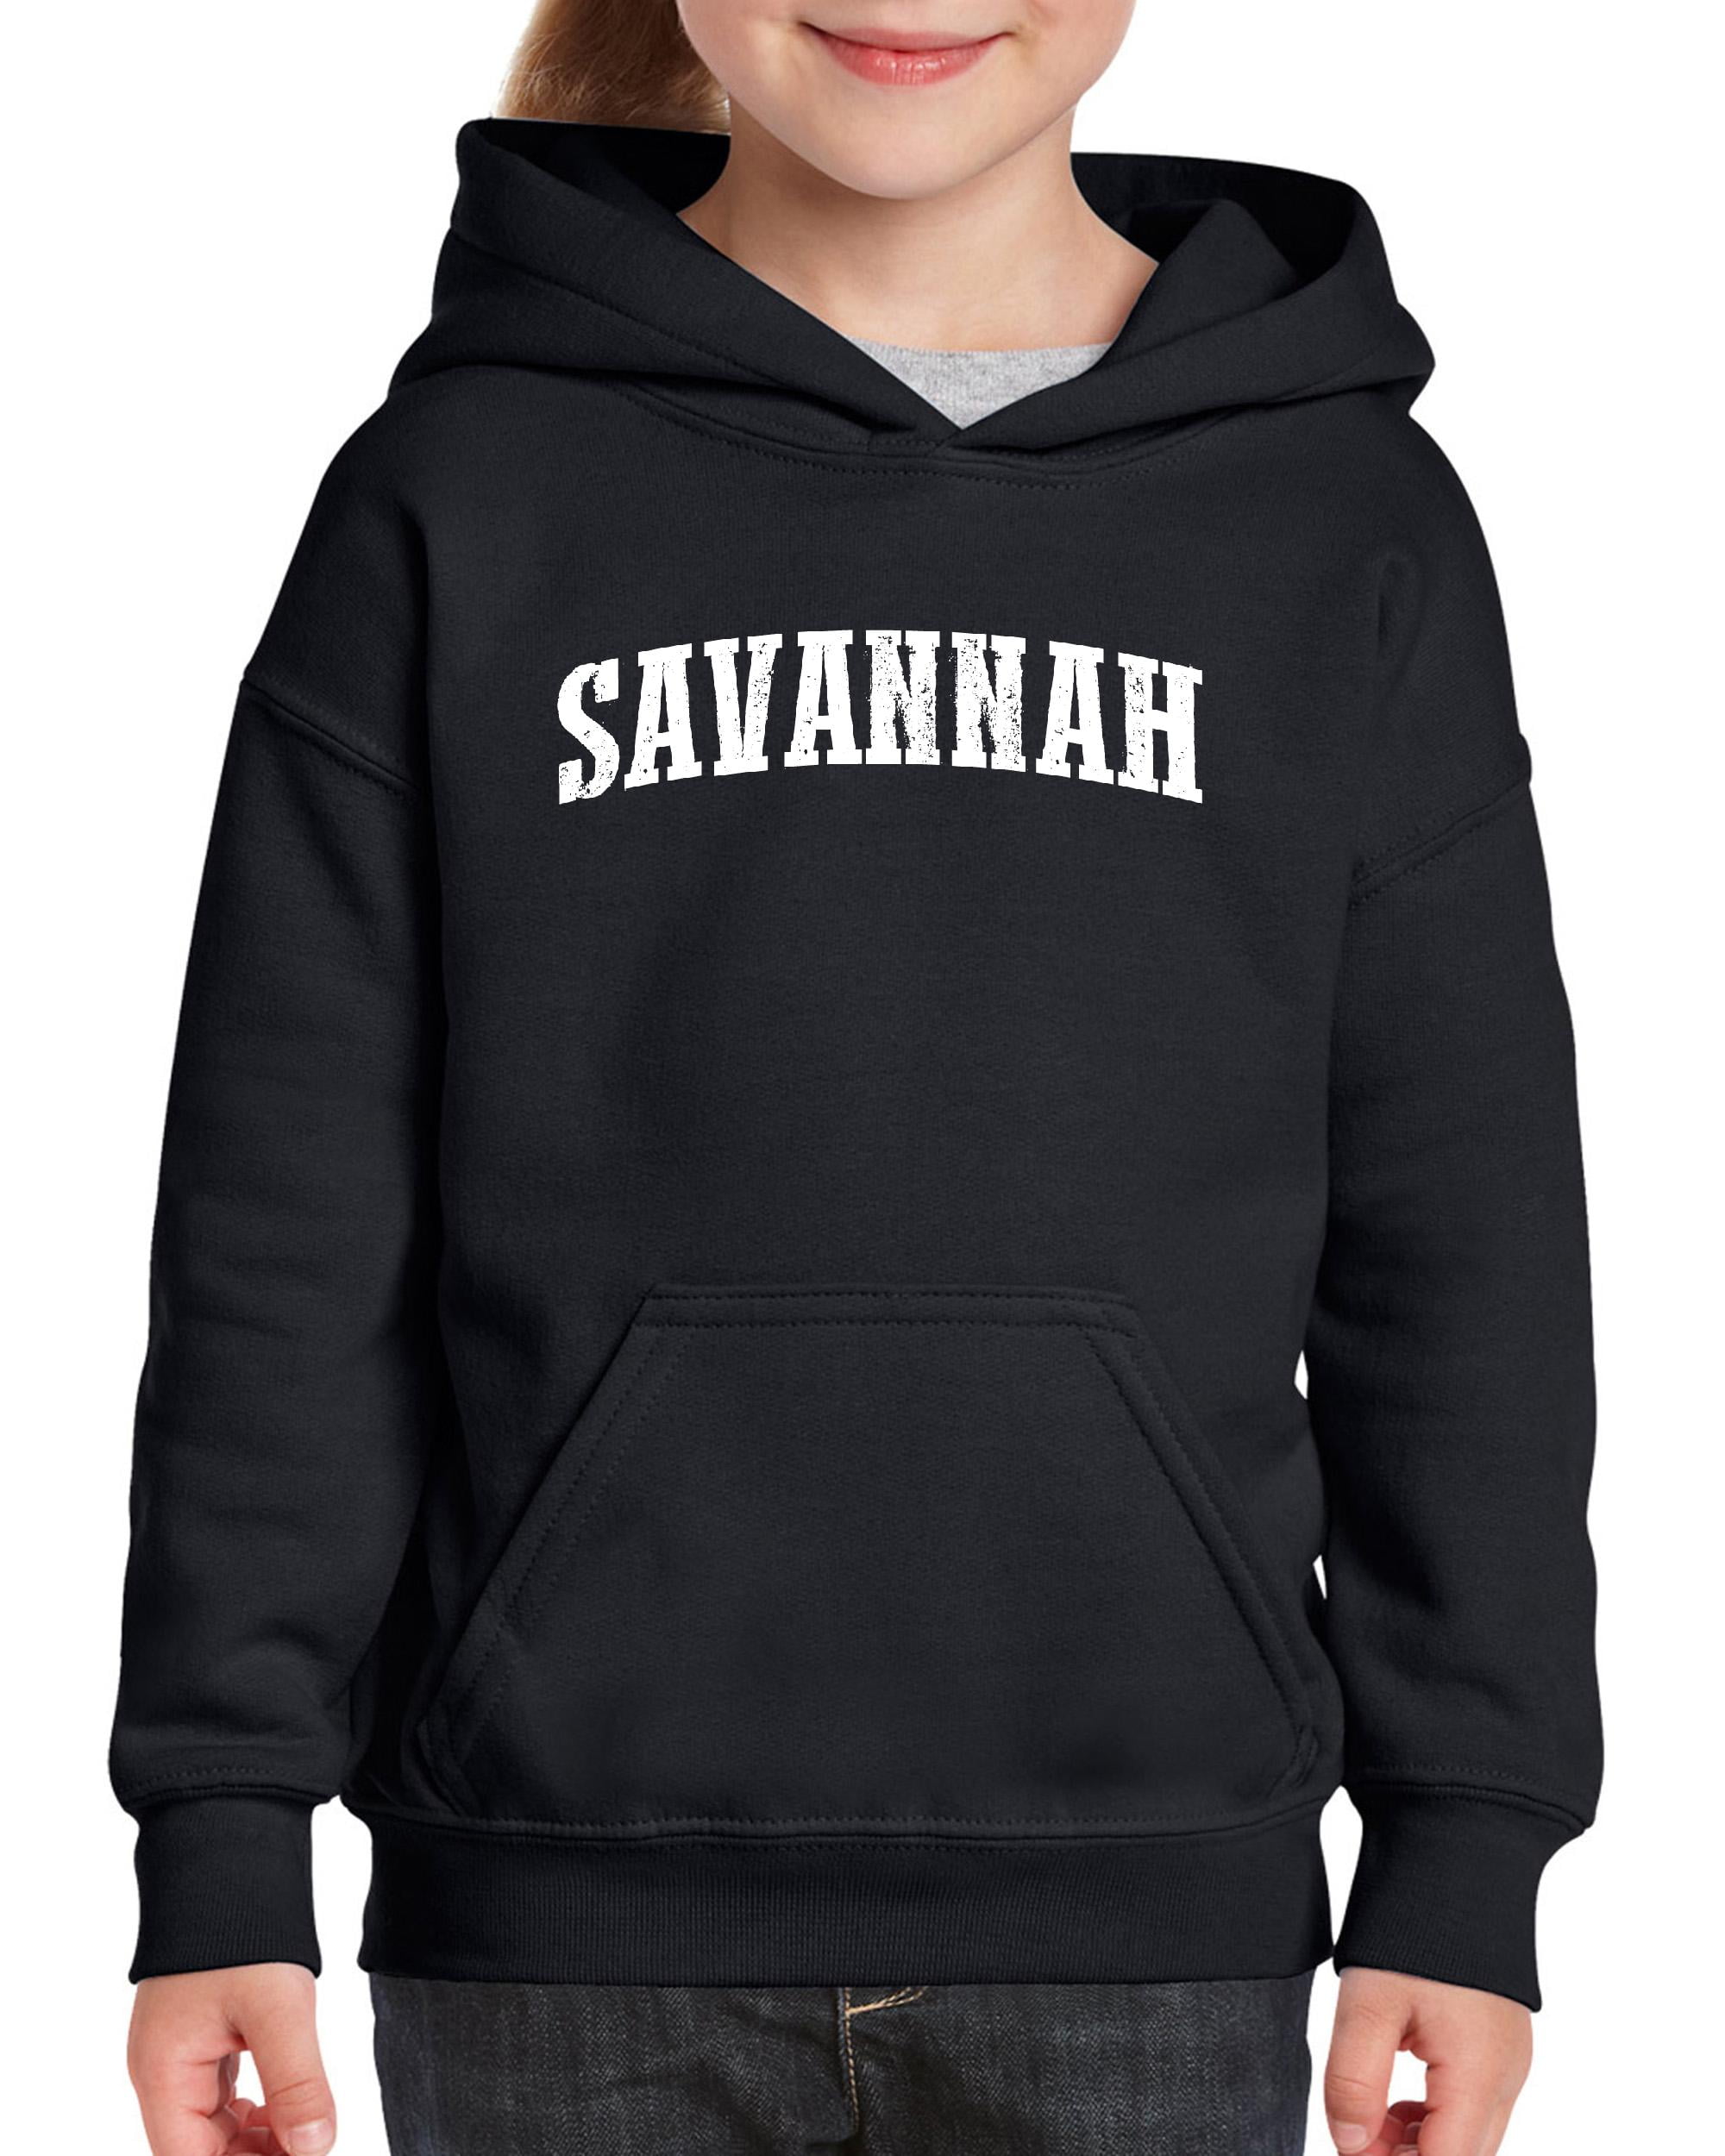 IWPF - Big Boys Hoodies and Sweatshirts - Savannah - Walmart.com